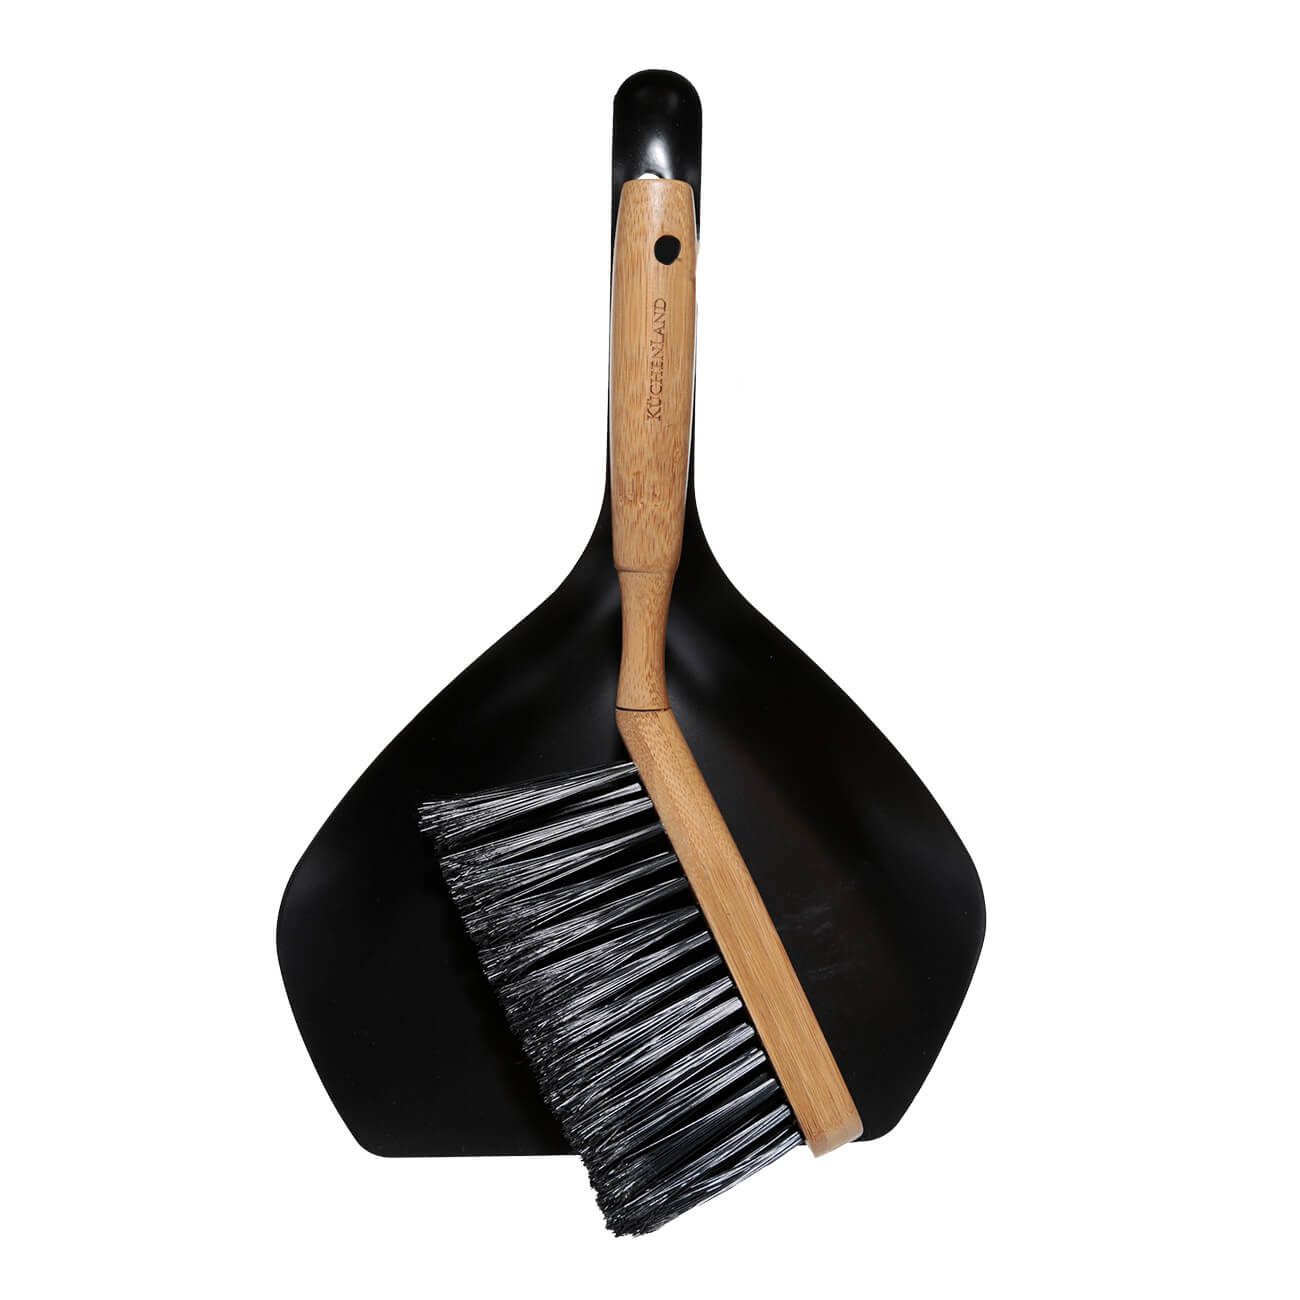 Щетка для мусора, с совком, 33 см, пластик/бамбук/сталь, черная, Black clean щетка щетка для посуды vetta